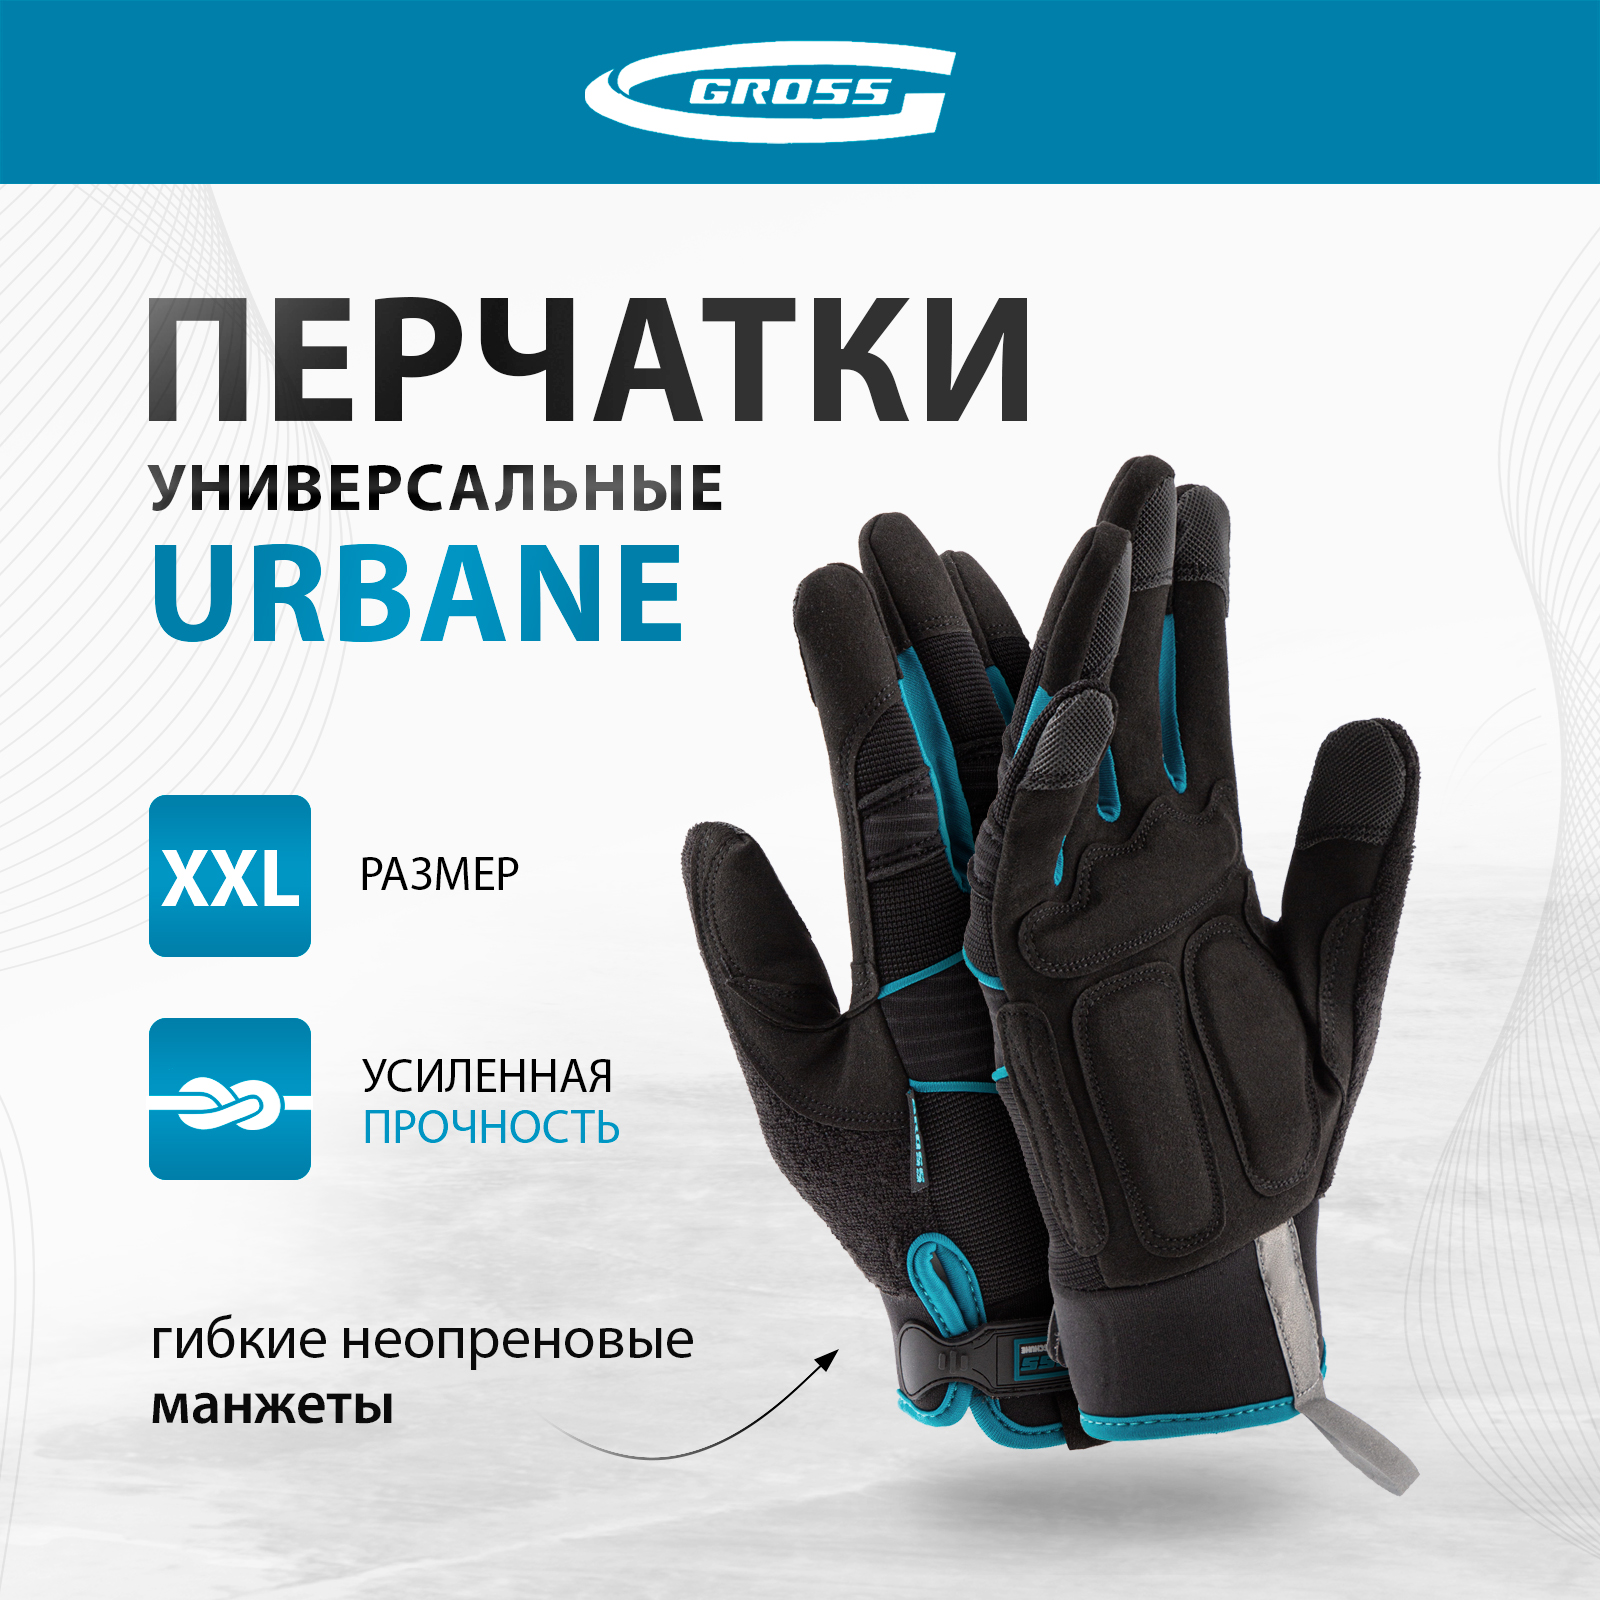 Перчатки универсальные комбинированные GROSS URBANE размер XL (10) 90313 перчатки универсальные комбинированные gross stylish с накладками р xl 10 90320